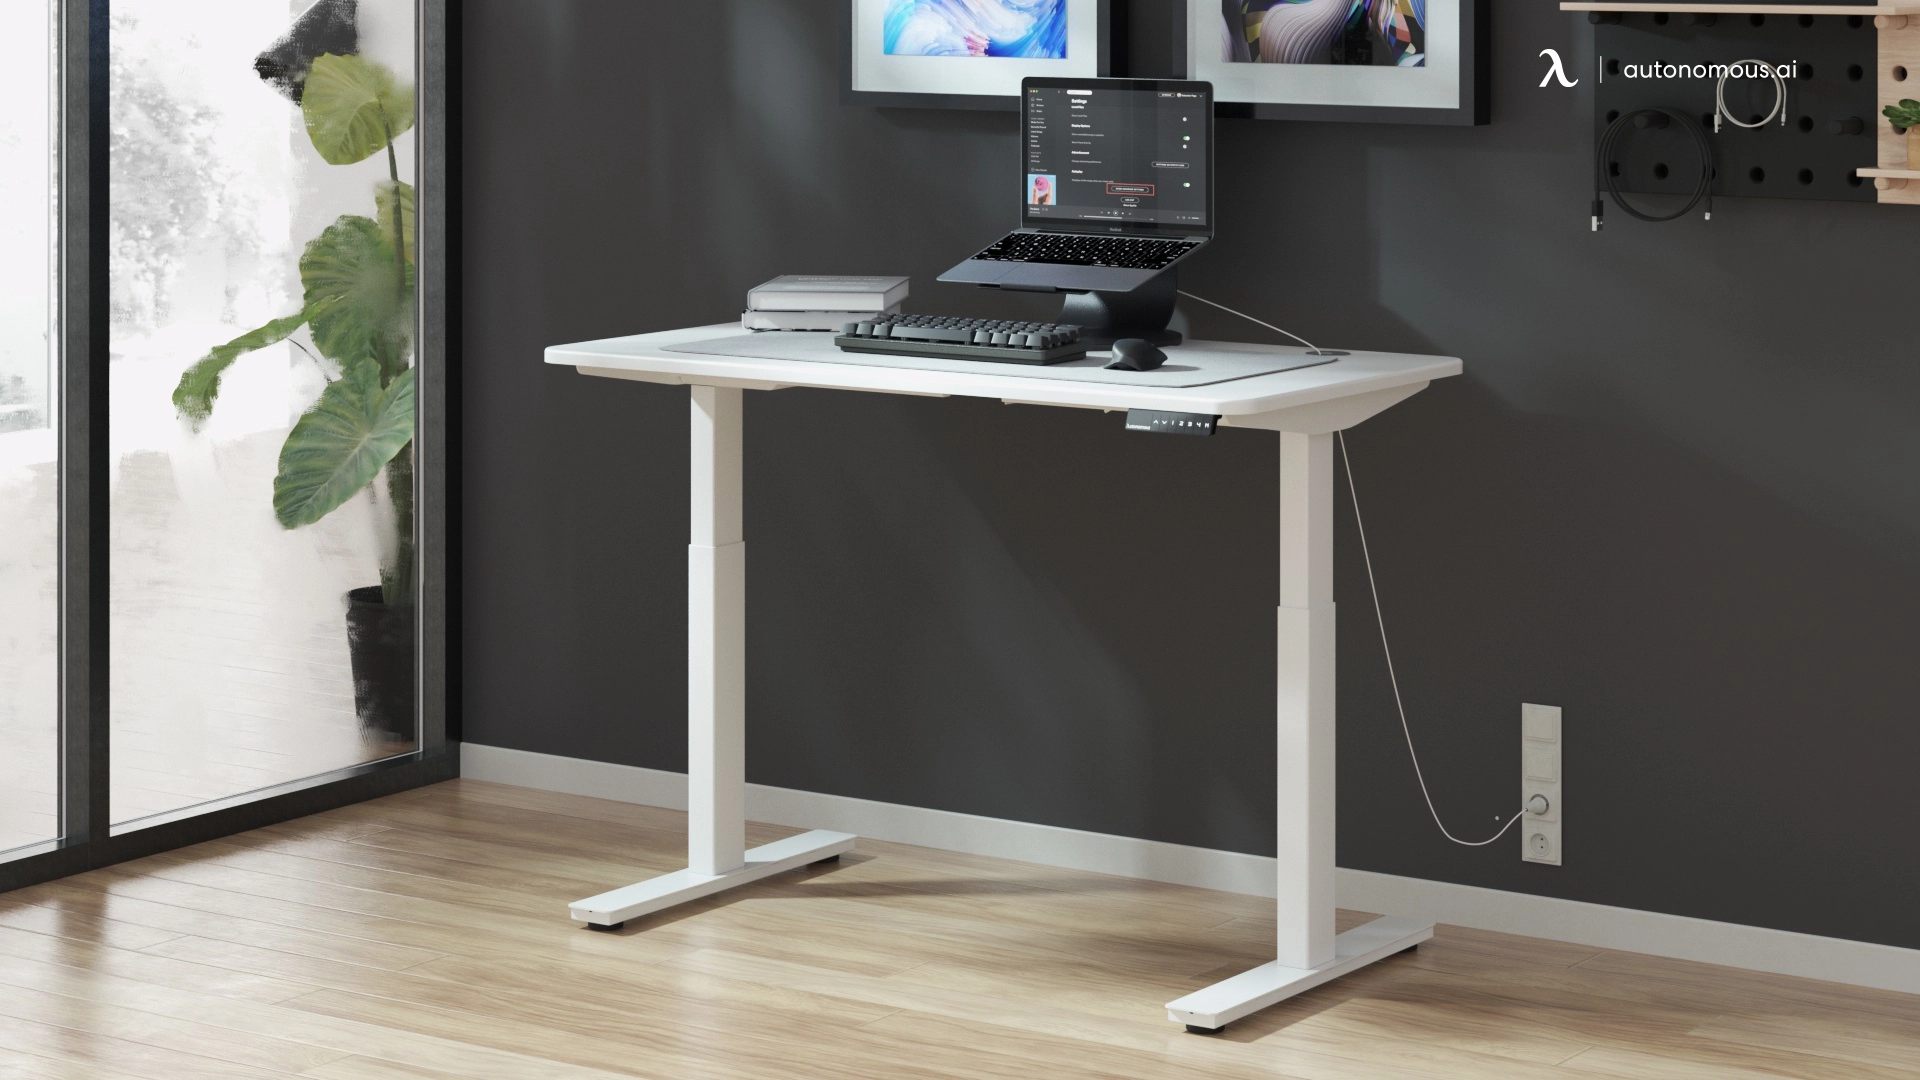 Not Ergonomic - cheap standing desk